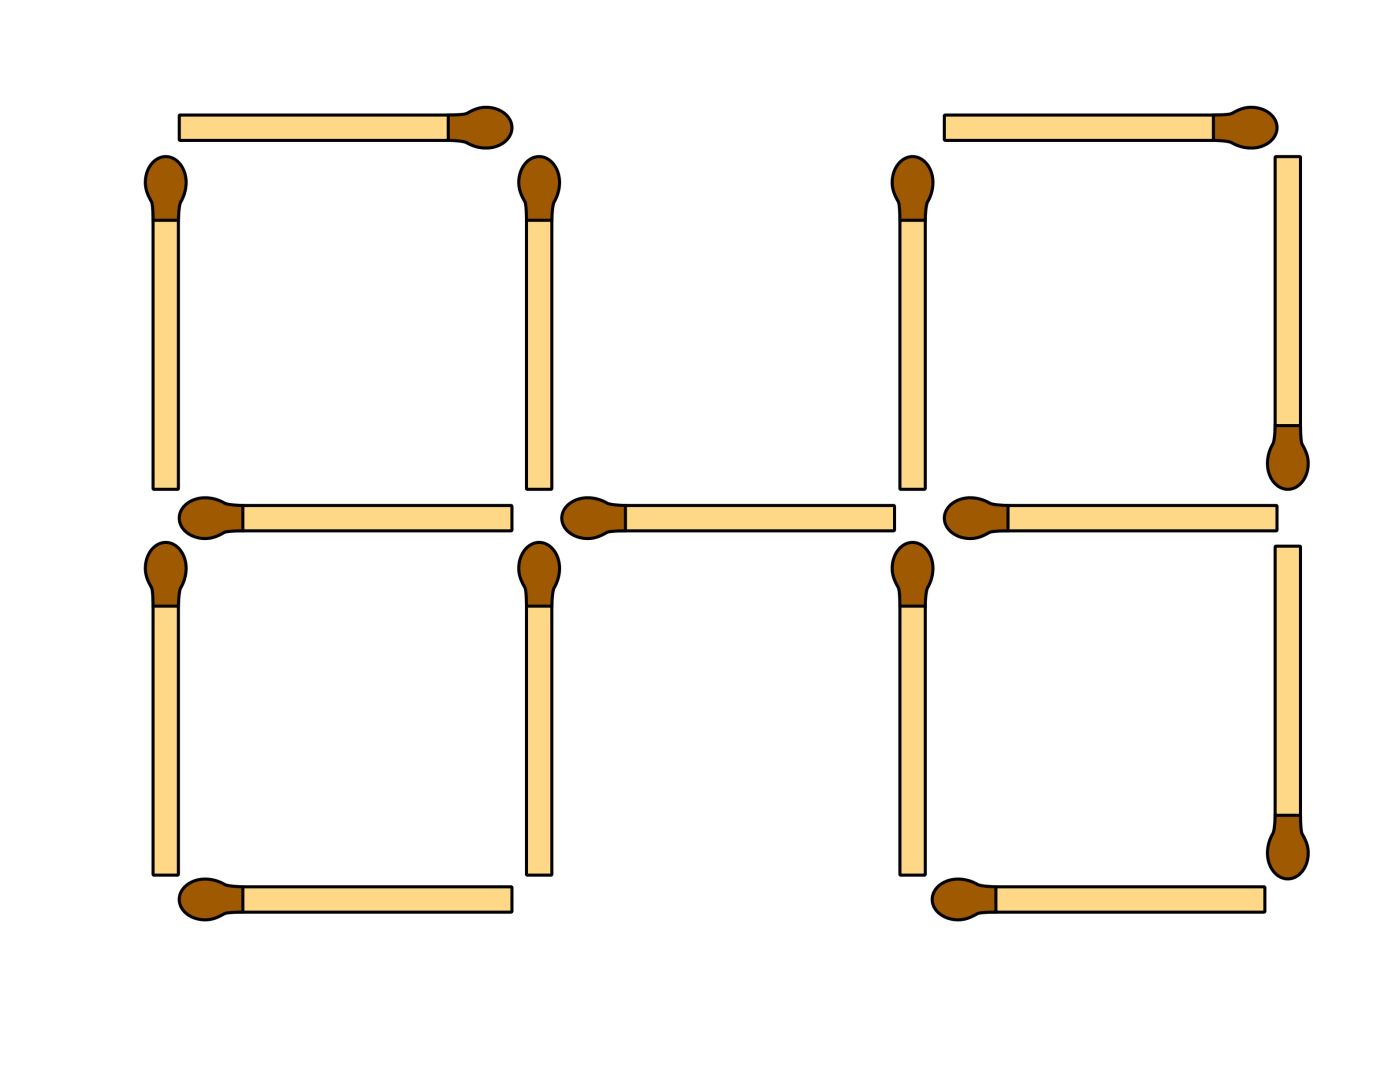 Переложи 2 спички так чтобы получилось 5 квадратов